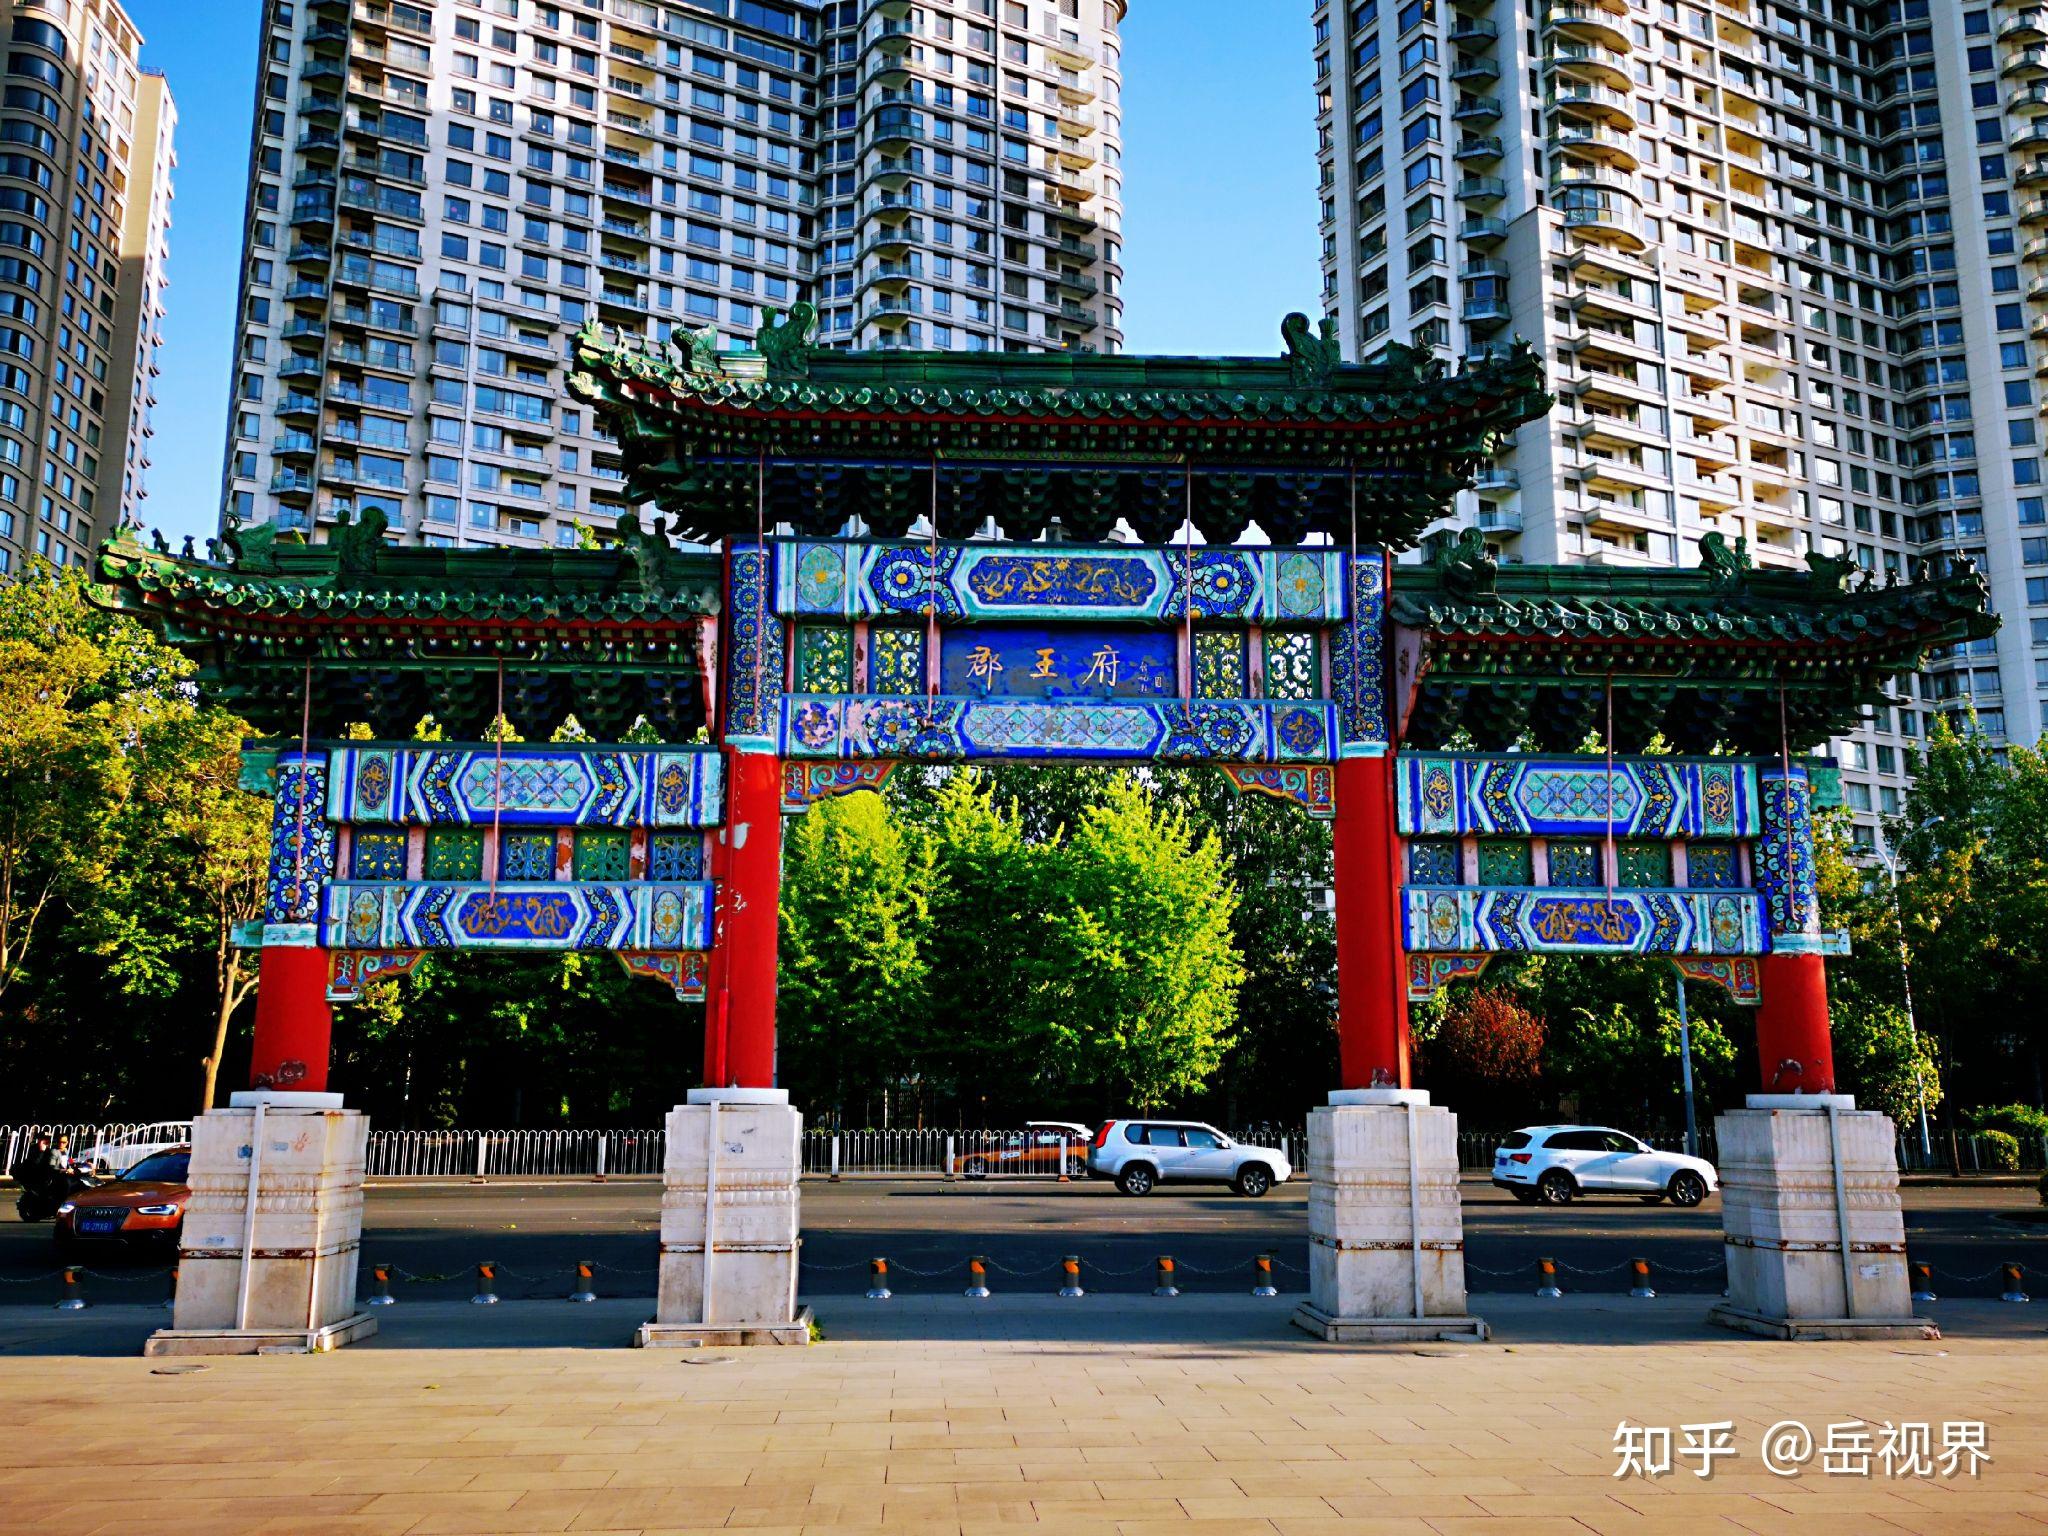 北京朝阳公园南门有一座郡王府,你知道是哪位王爷的府邸吗?